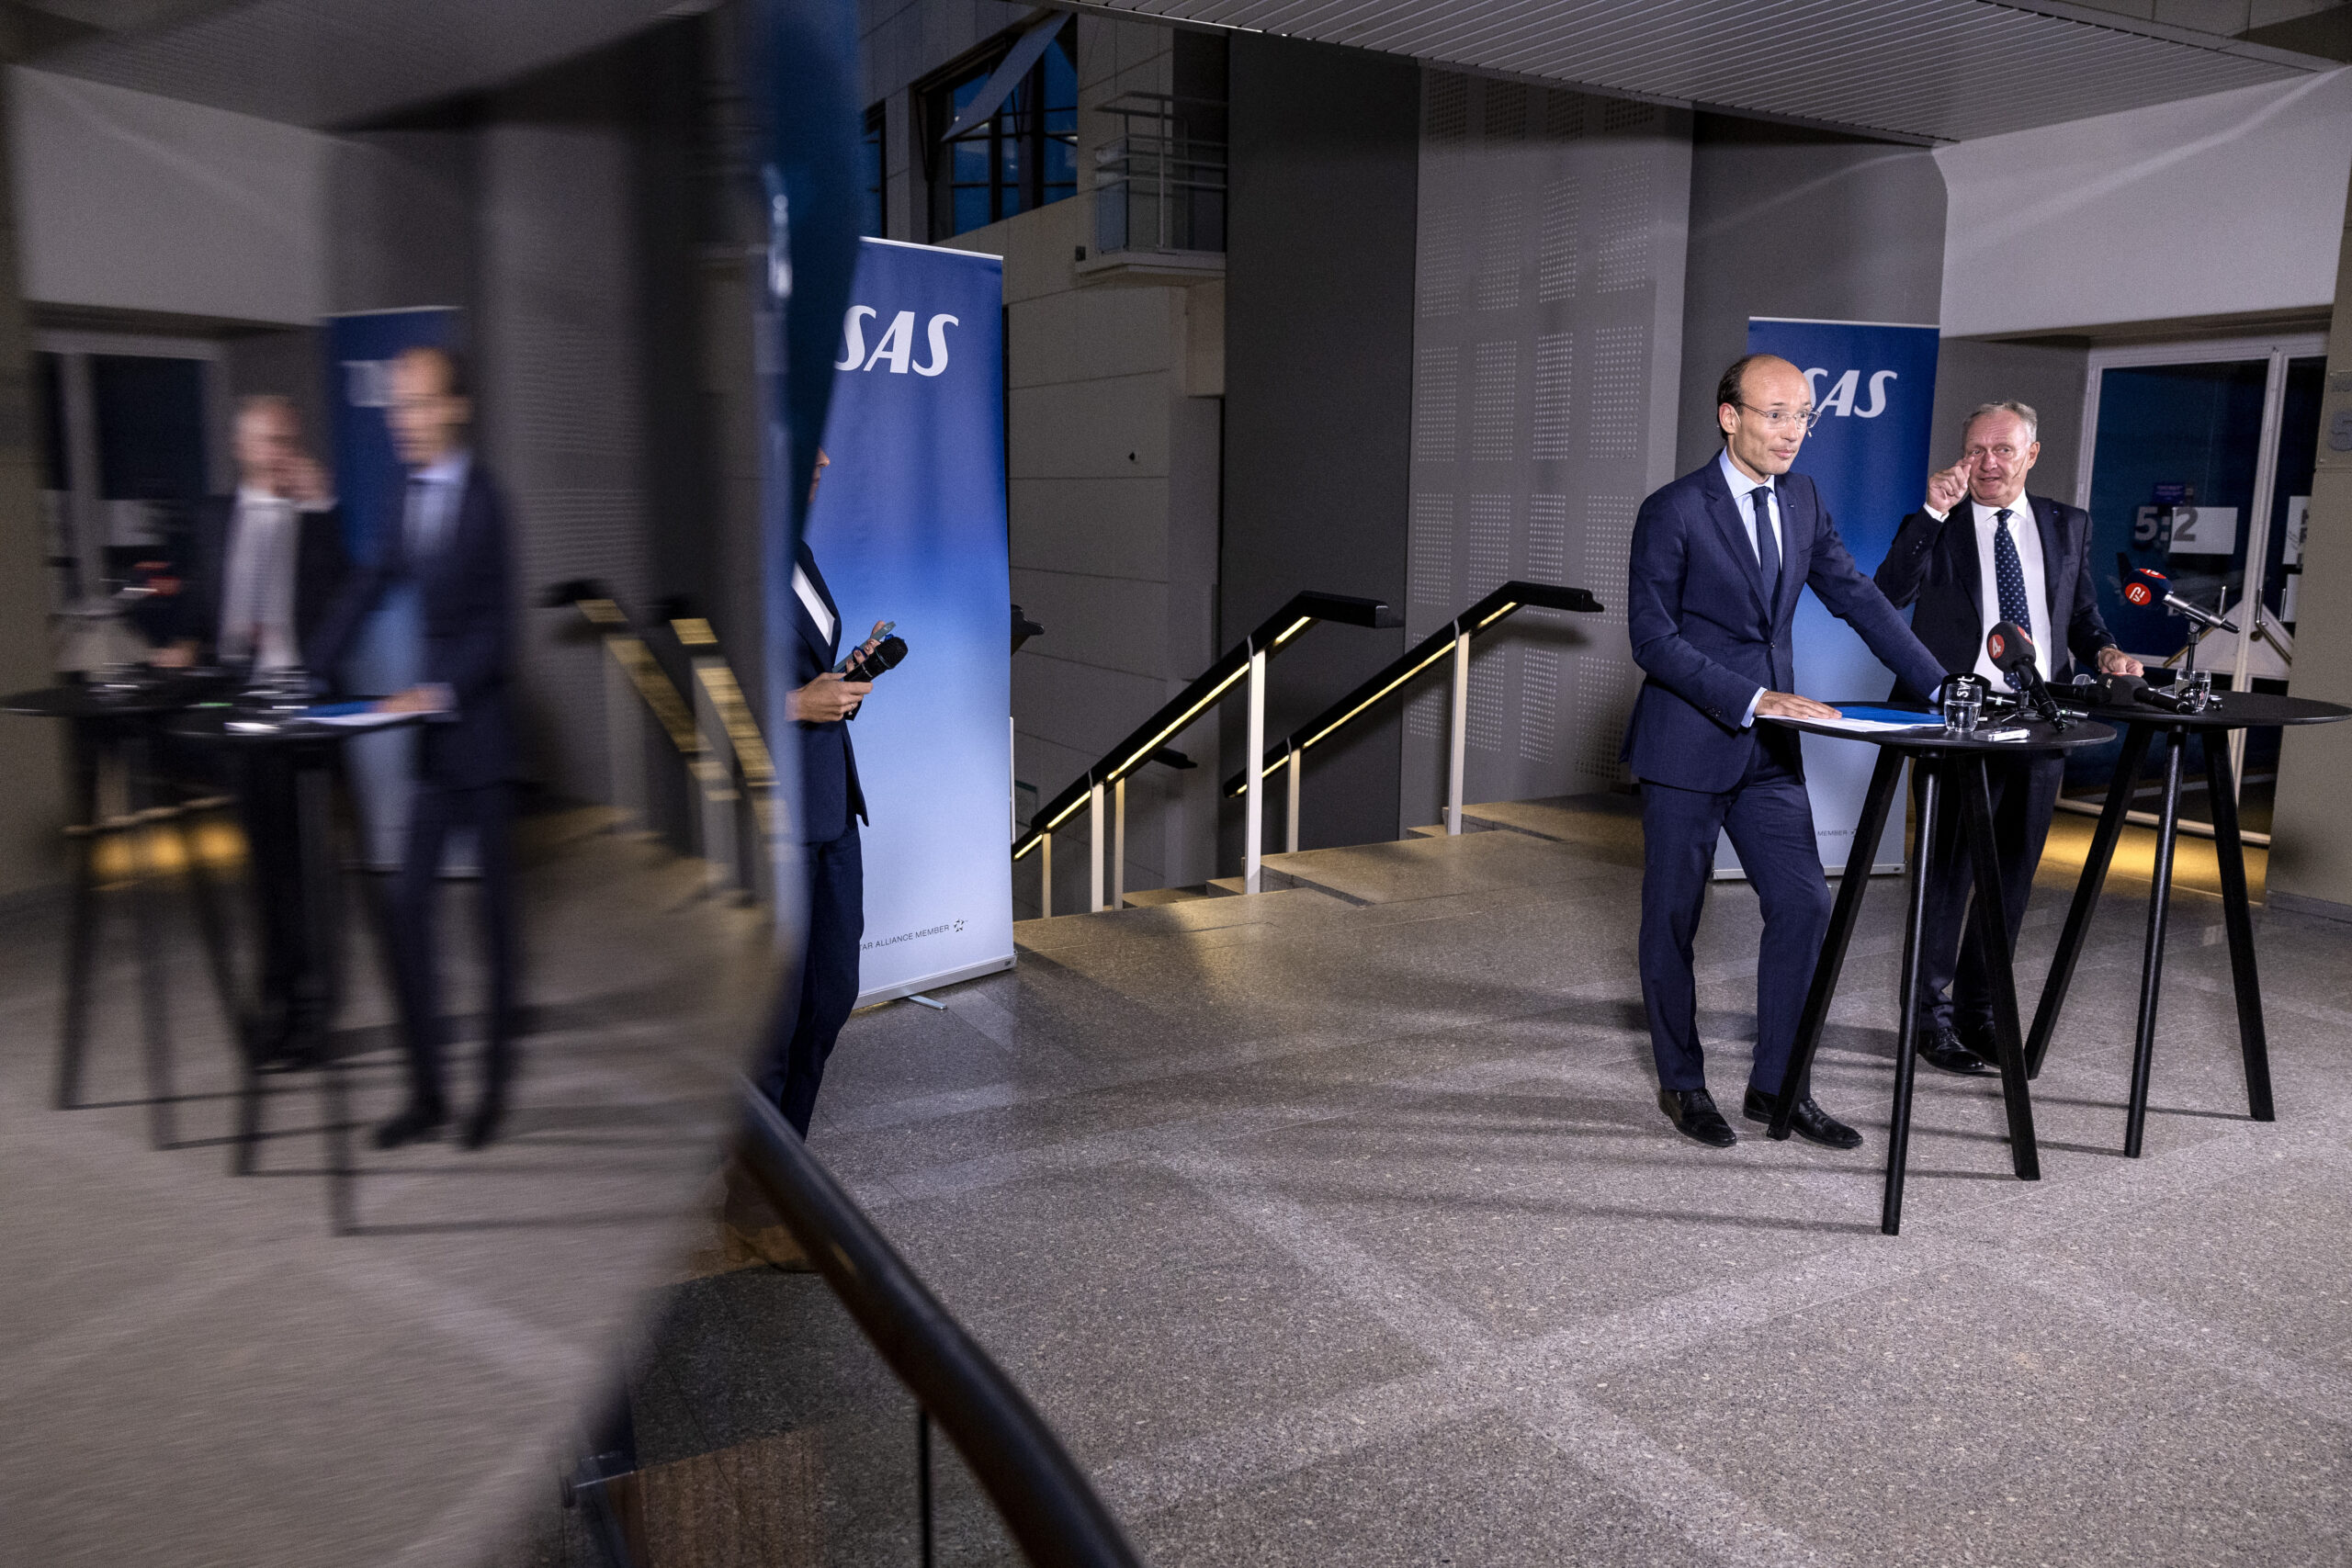 Anko van der Werff, VD och koncernchef för SAS och Carsten Dilling styrelseordförande i SAS under en pressträff på SAS huvudkontor i Solna, där de nya storägarna presenterades.